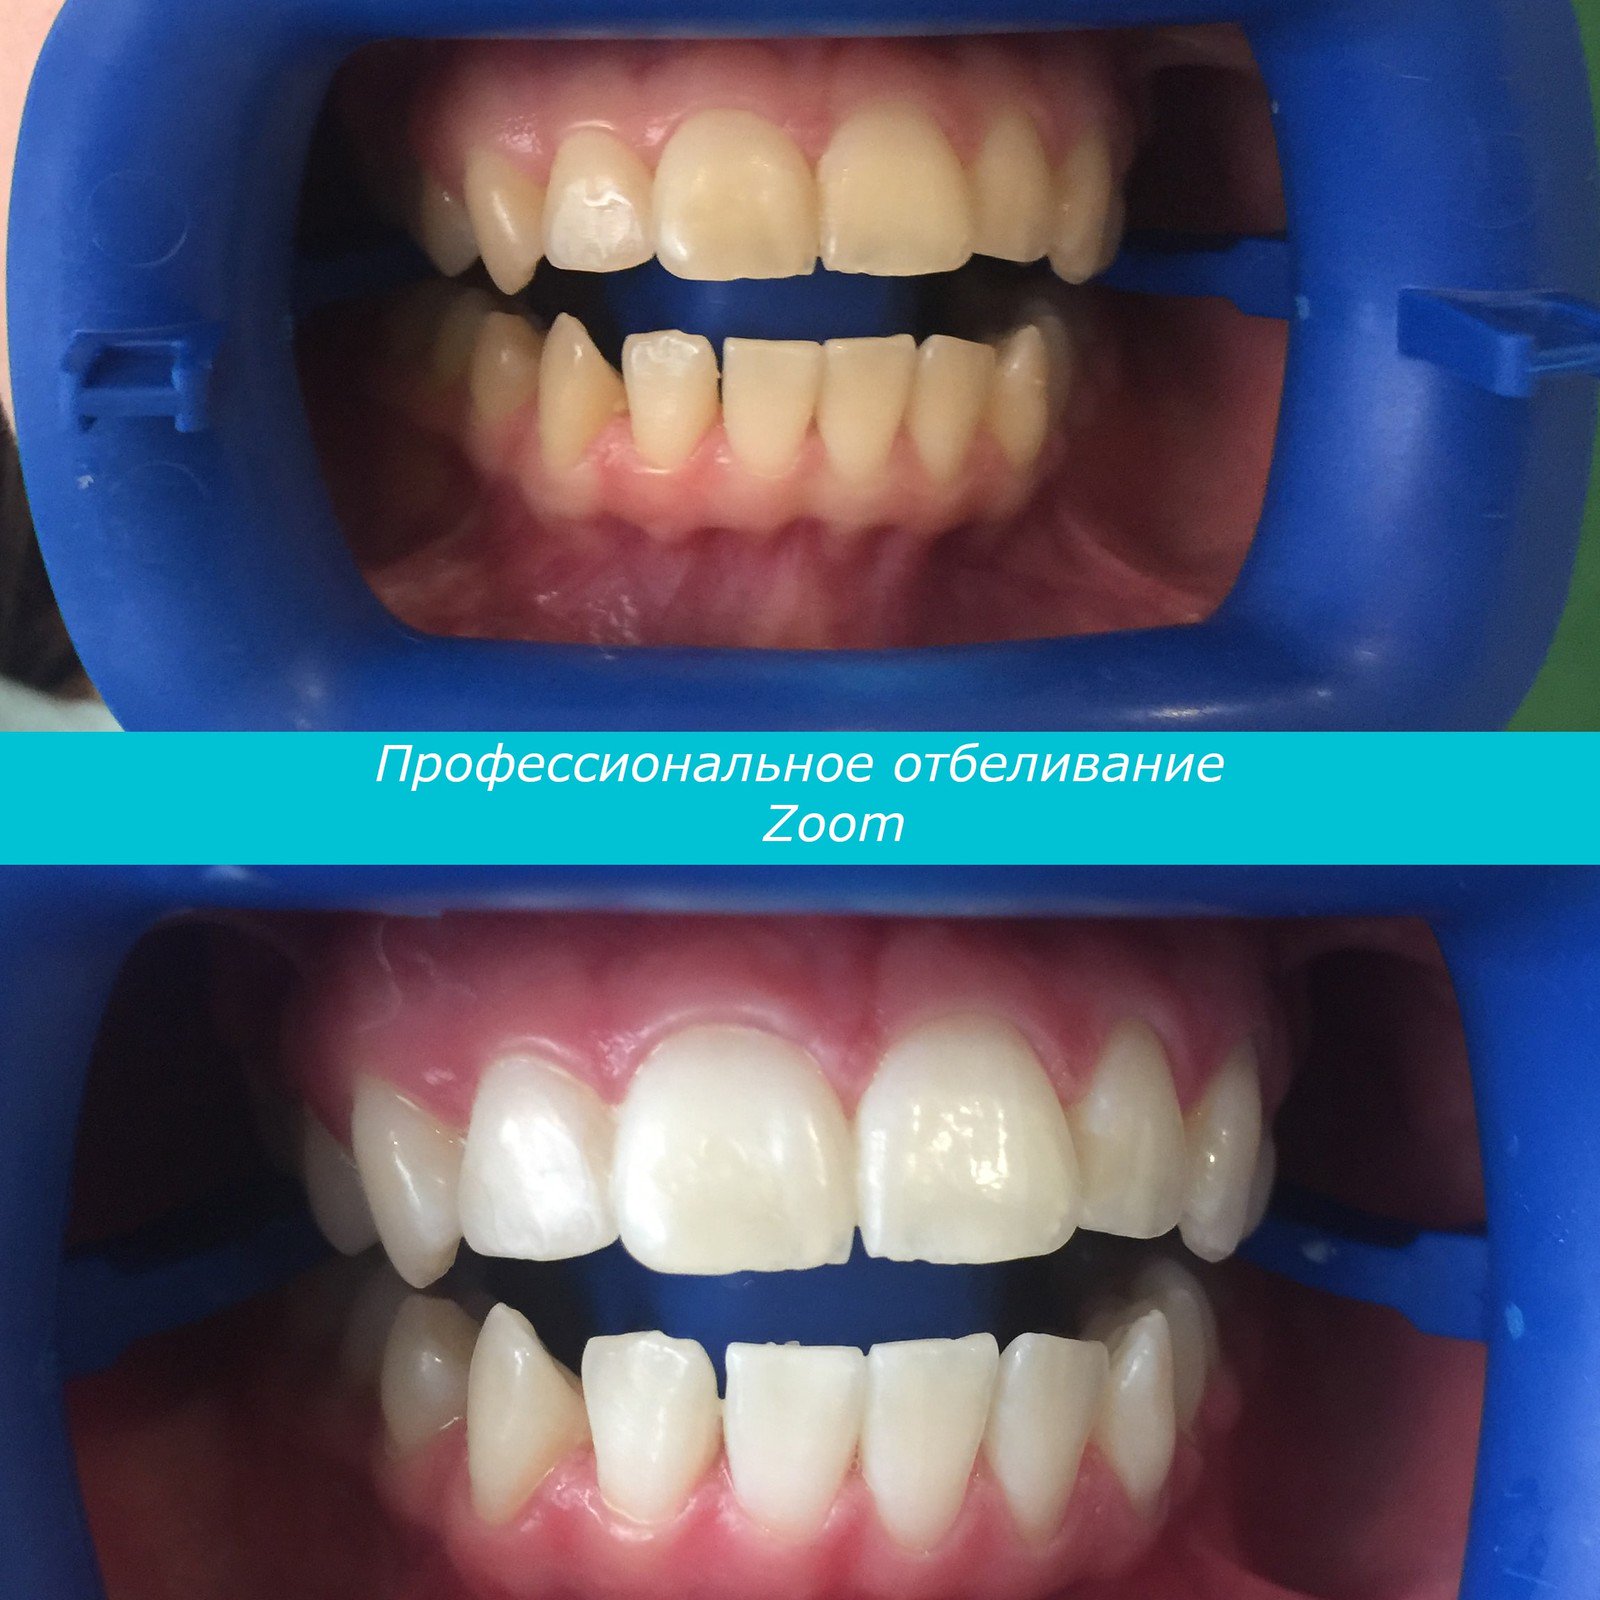 отбеливание зубов диодным лазером отзывы